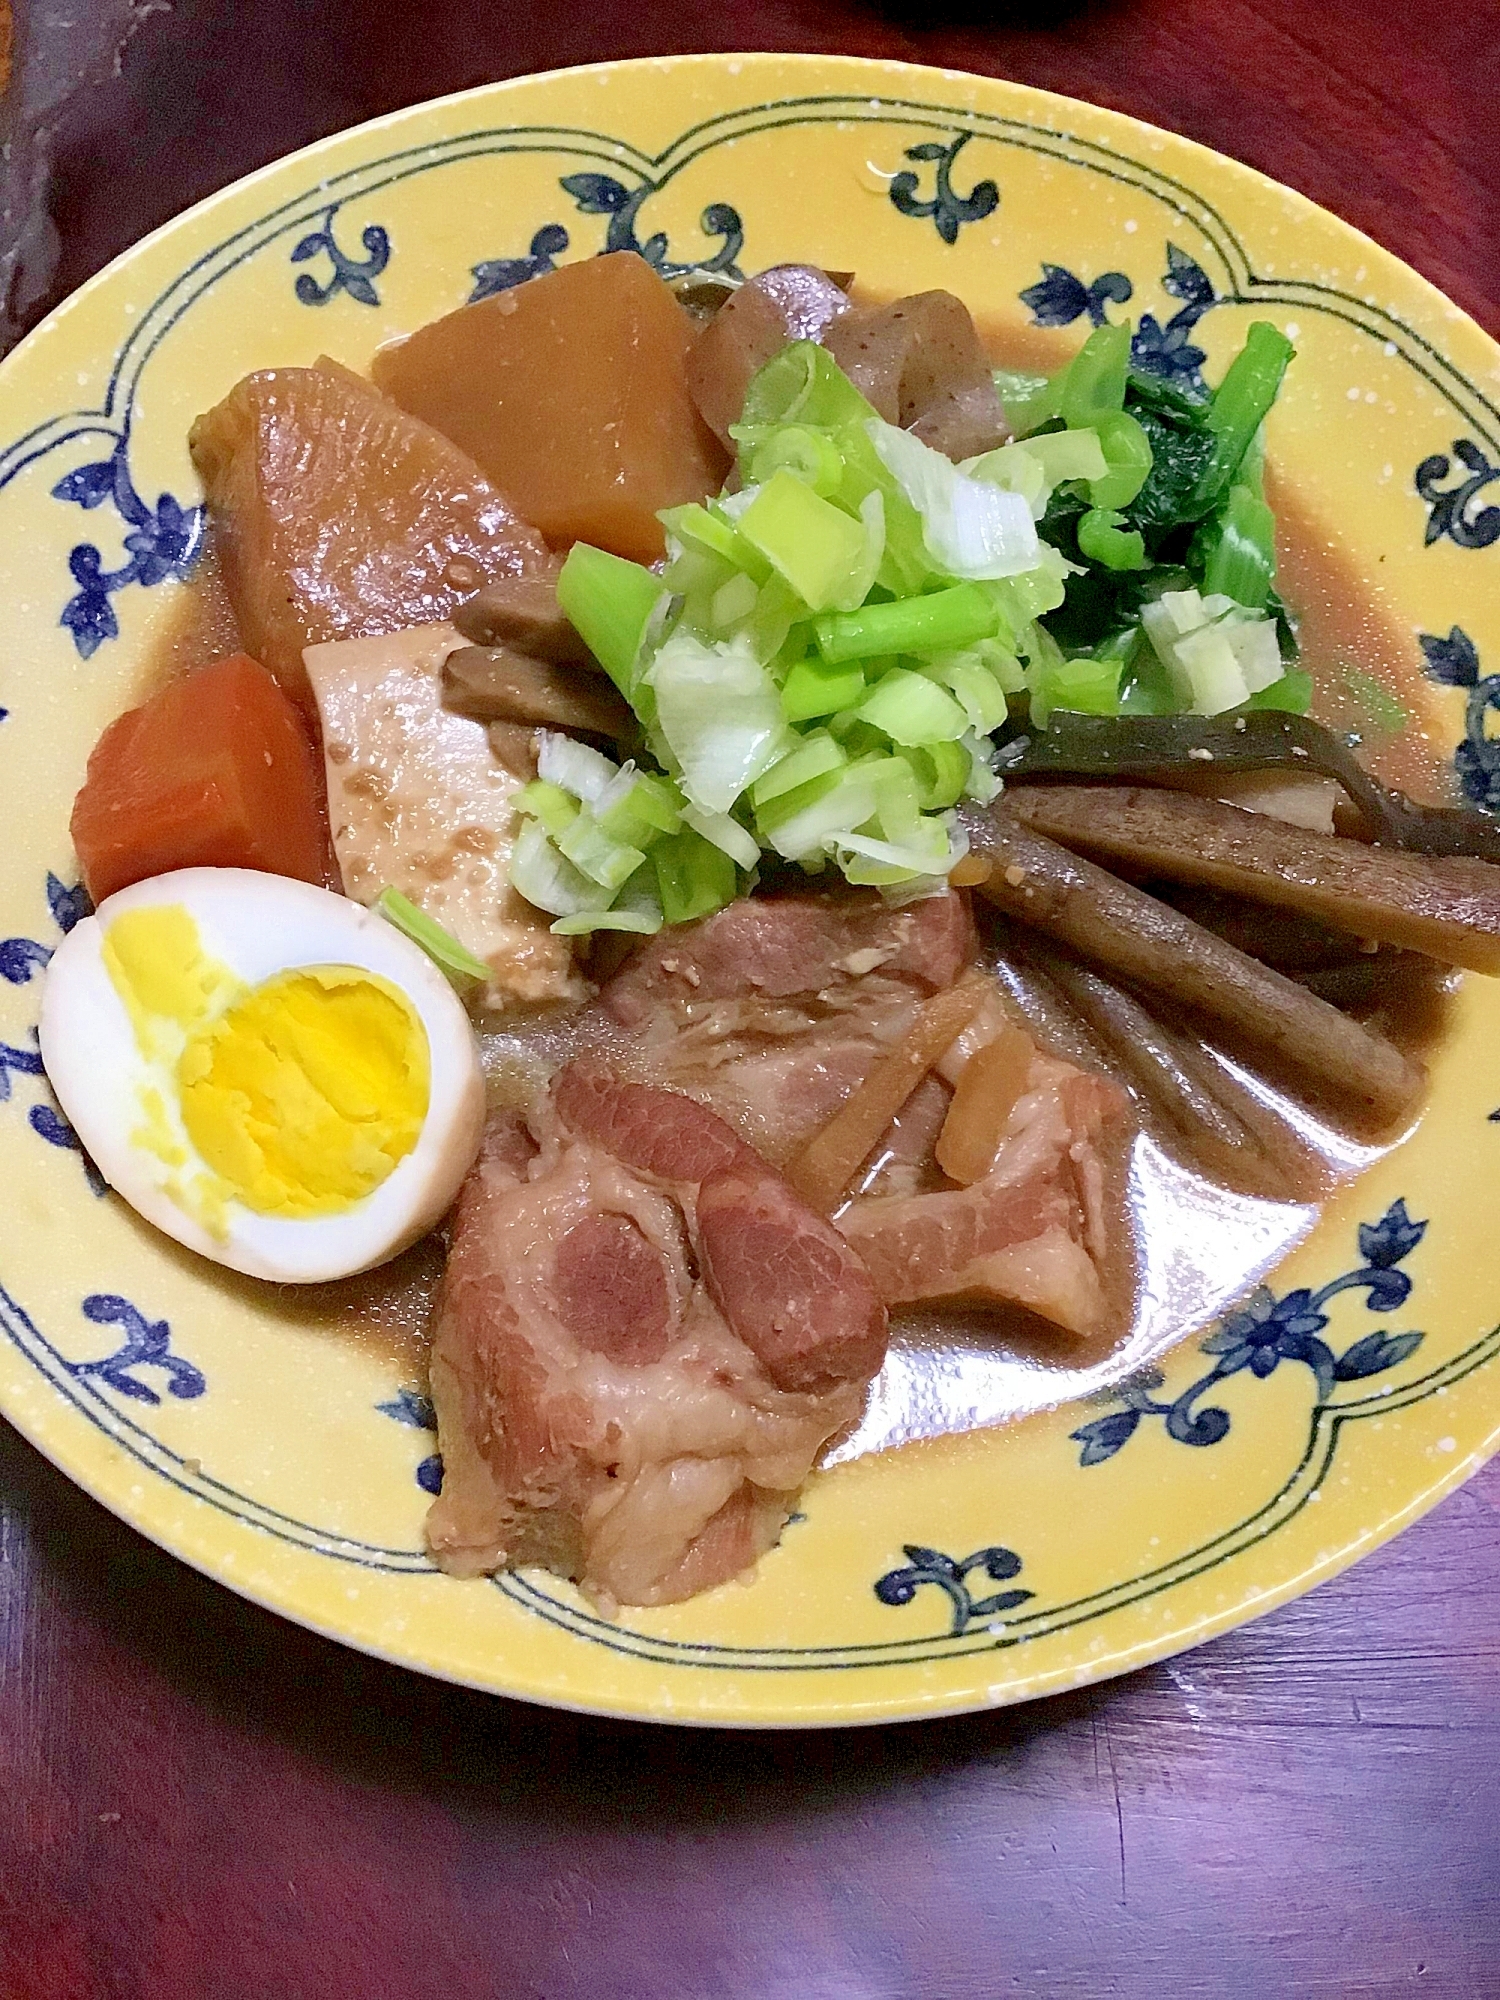 味噌味の豚の角煮with野菜と豆腐とゆで卵。